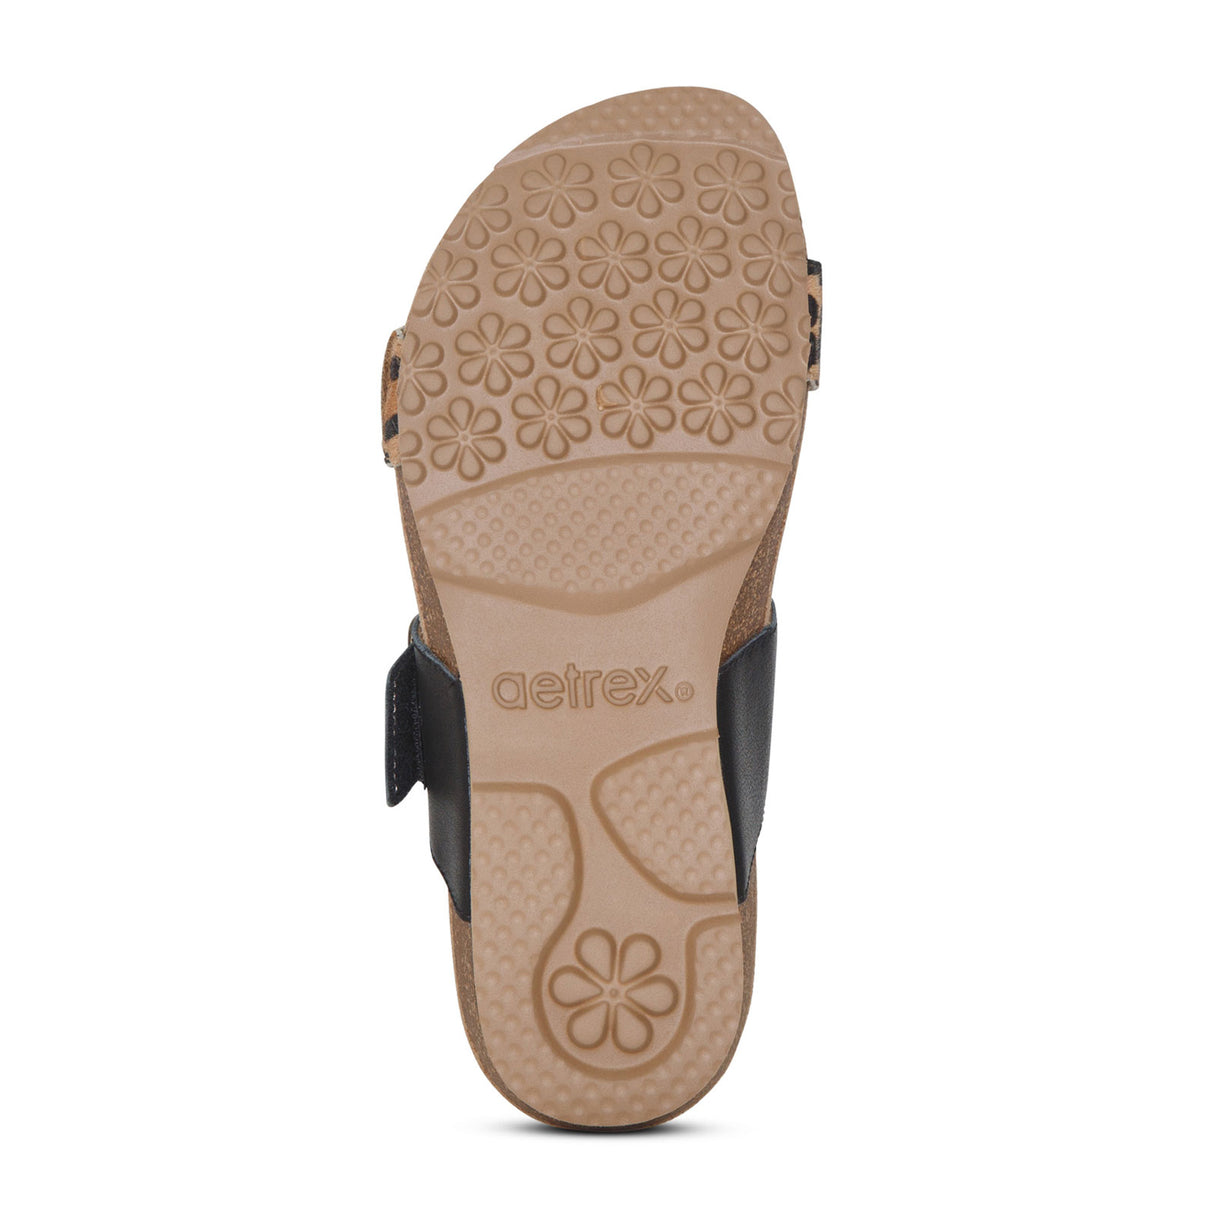 Aetrex Daisy Slide Sandal (Women) - Leopard Sandals - Slide - The Heel Shoe Fitters